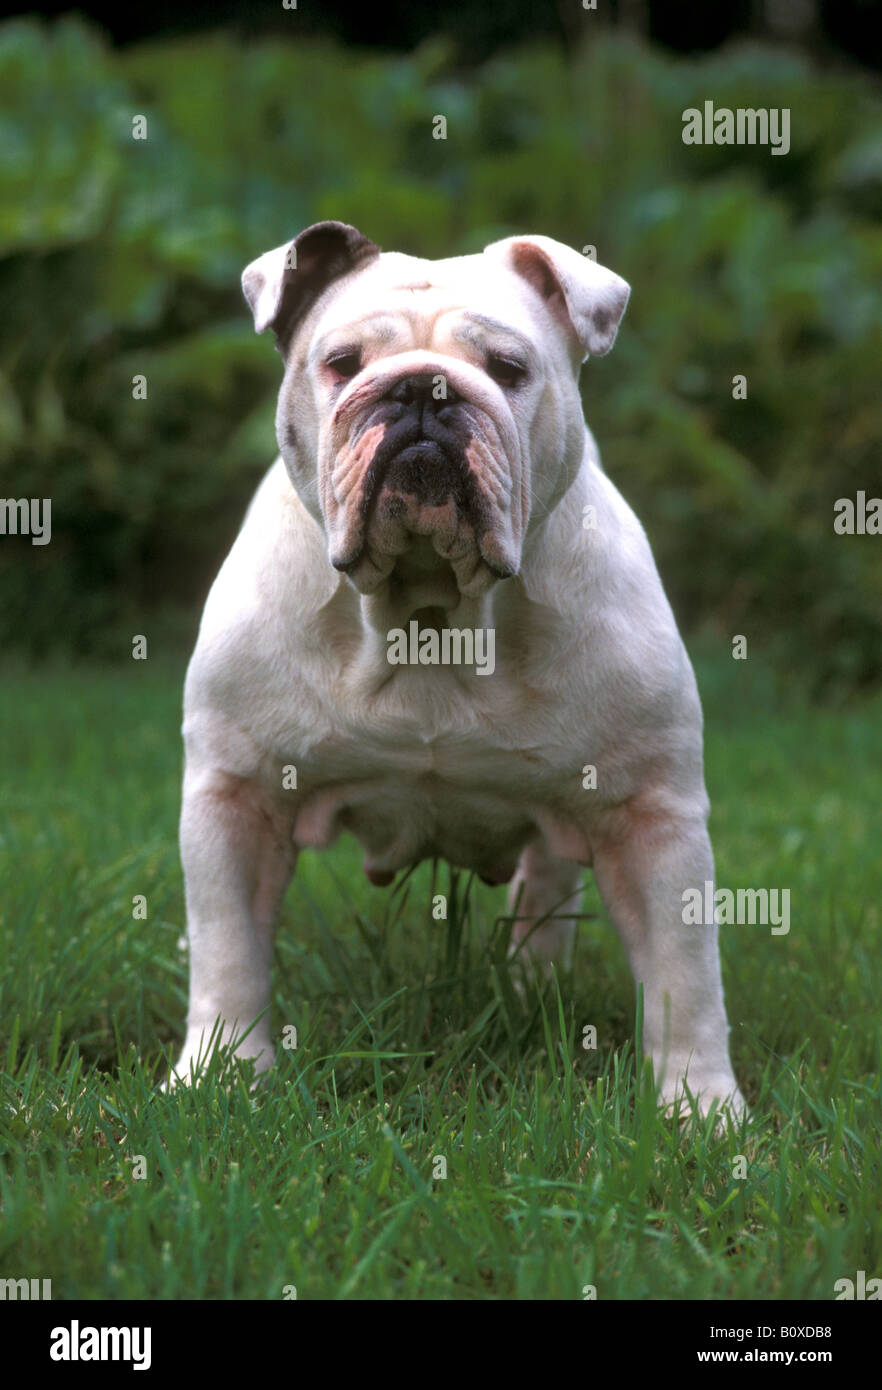 Englische Bulldogge (Canis Lupus Familiaris) Erwachsenen Hund stehend auf dem Rasen Stockfoto